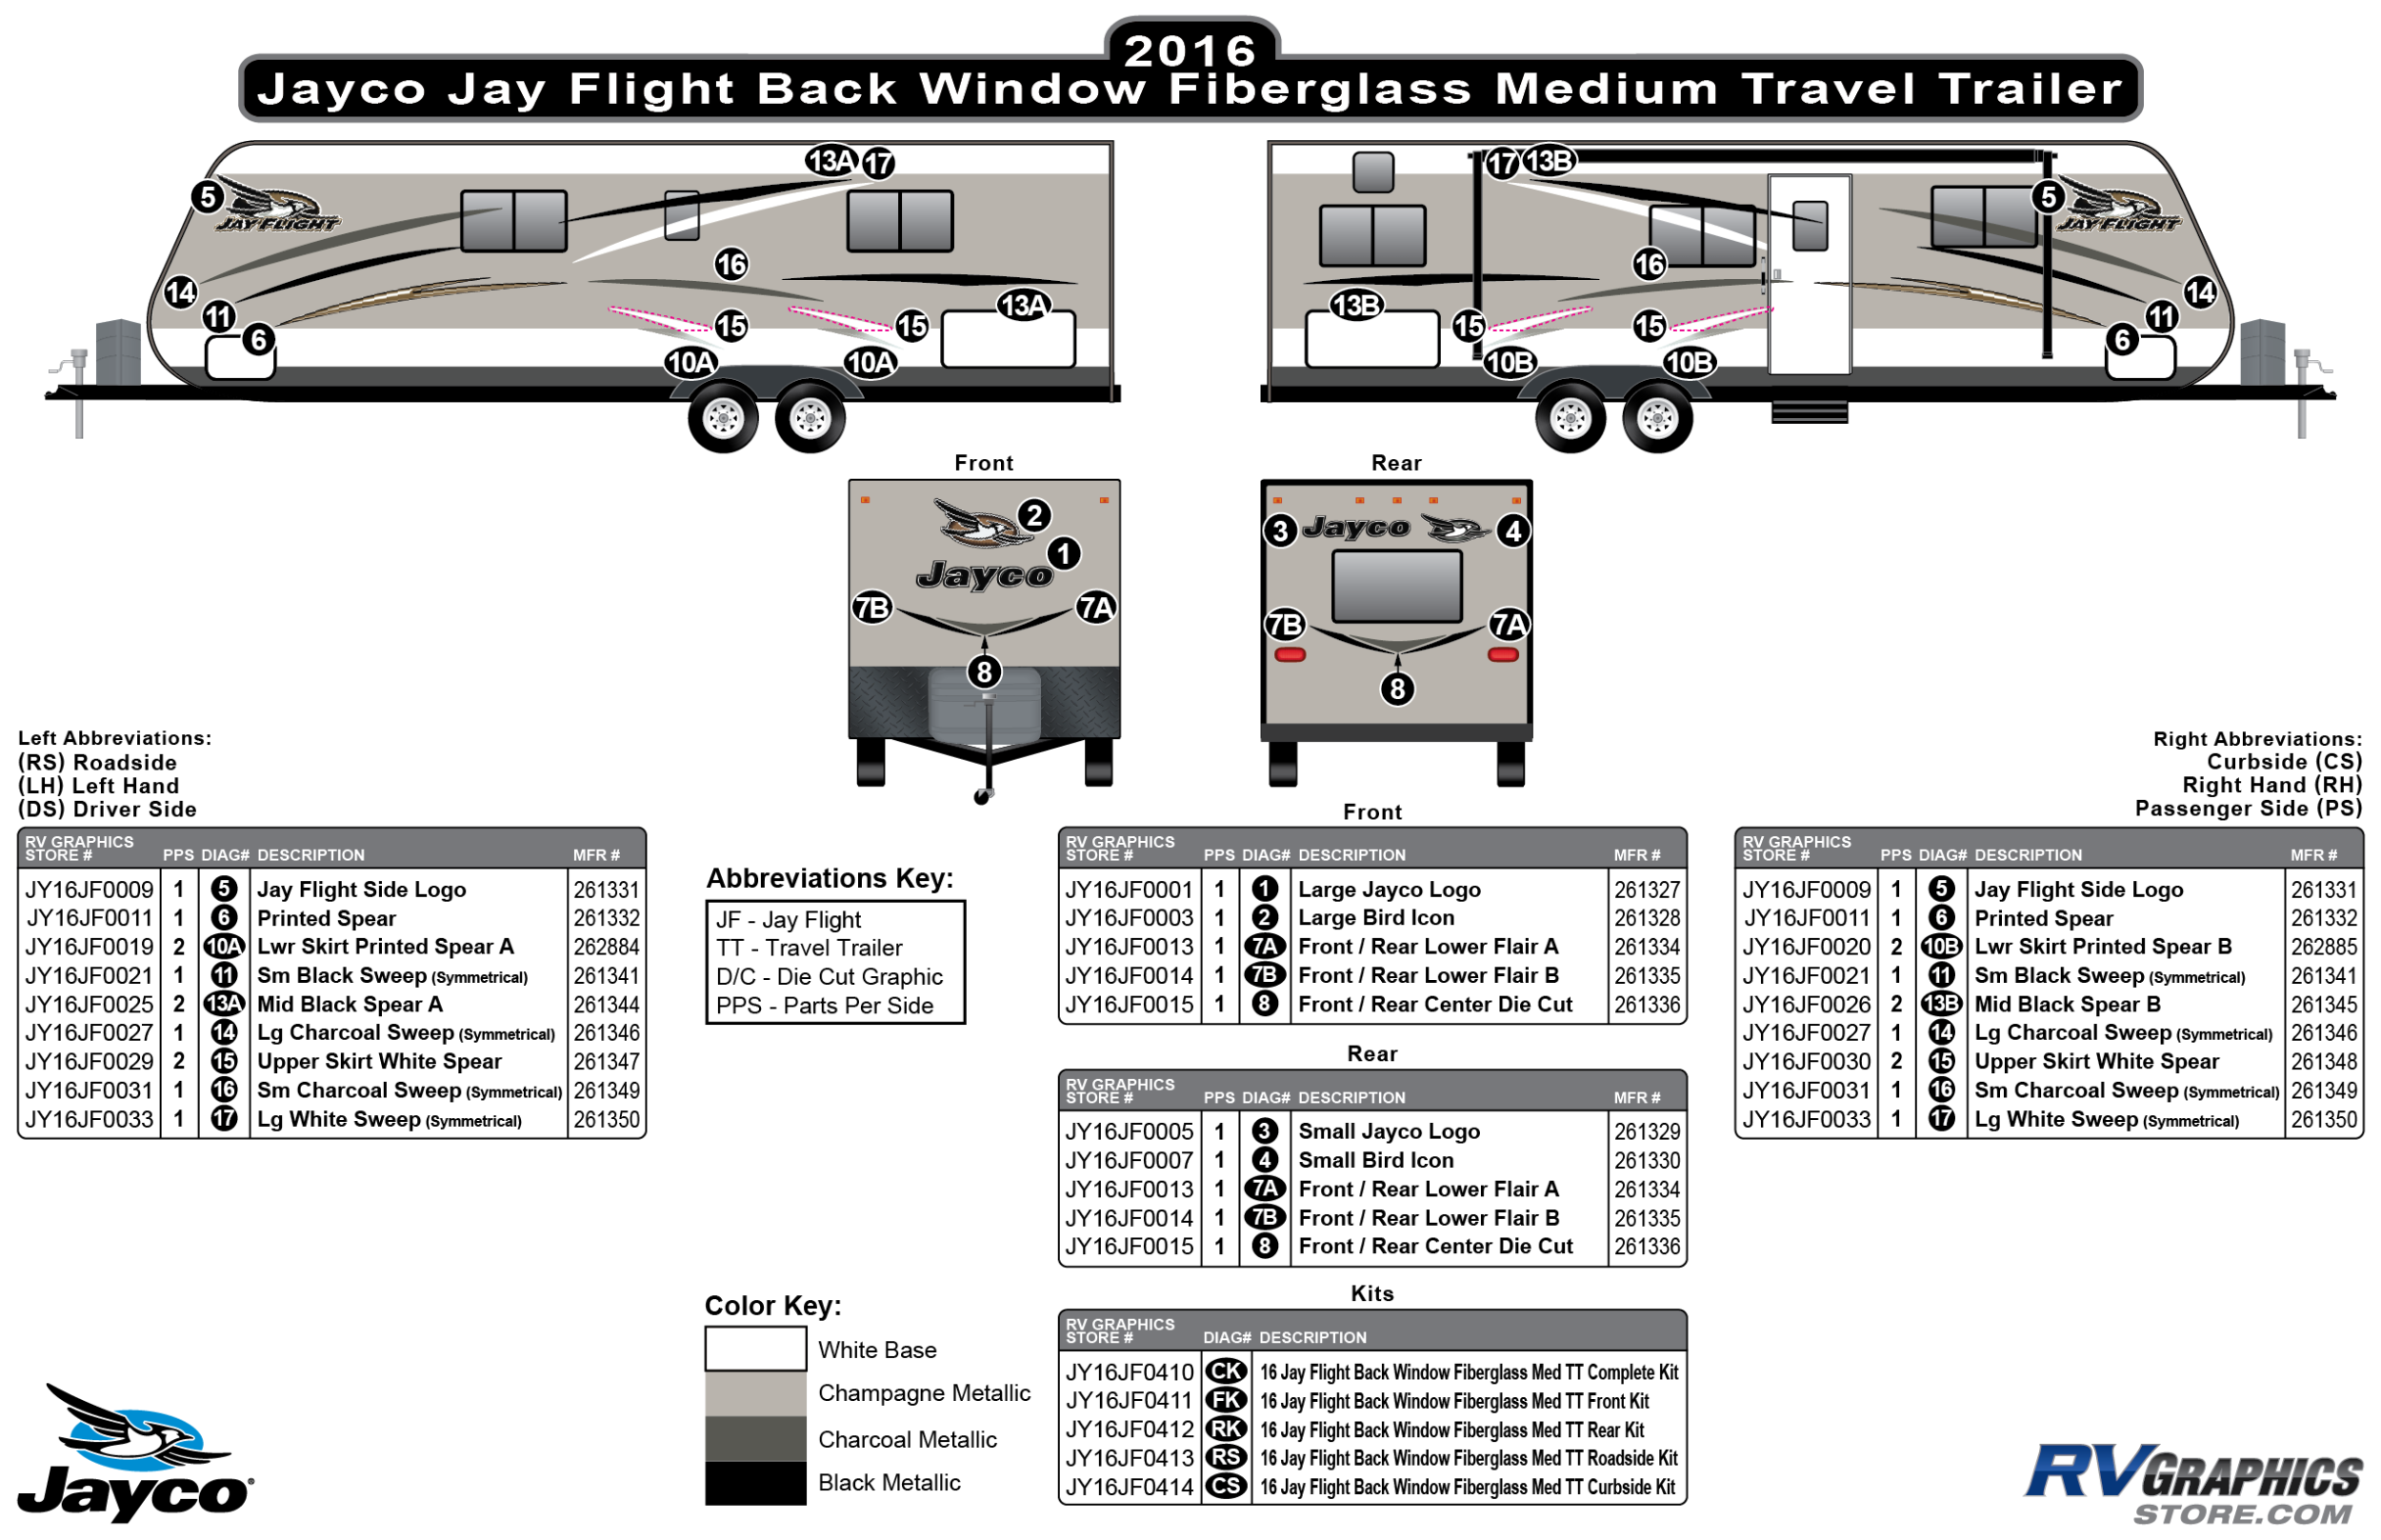 Jay Flight - 2016 Jay Flight MedTT-Medium Travel Trailer Fiberglass Backwindow